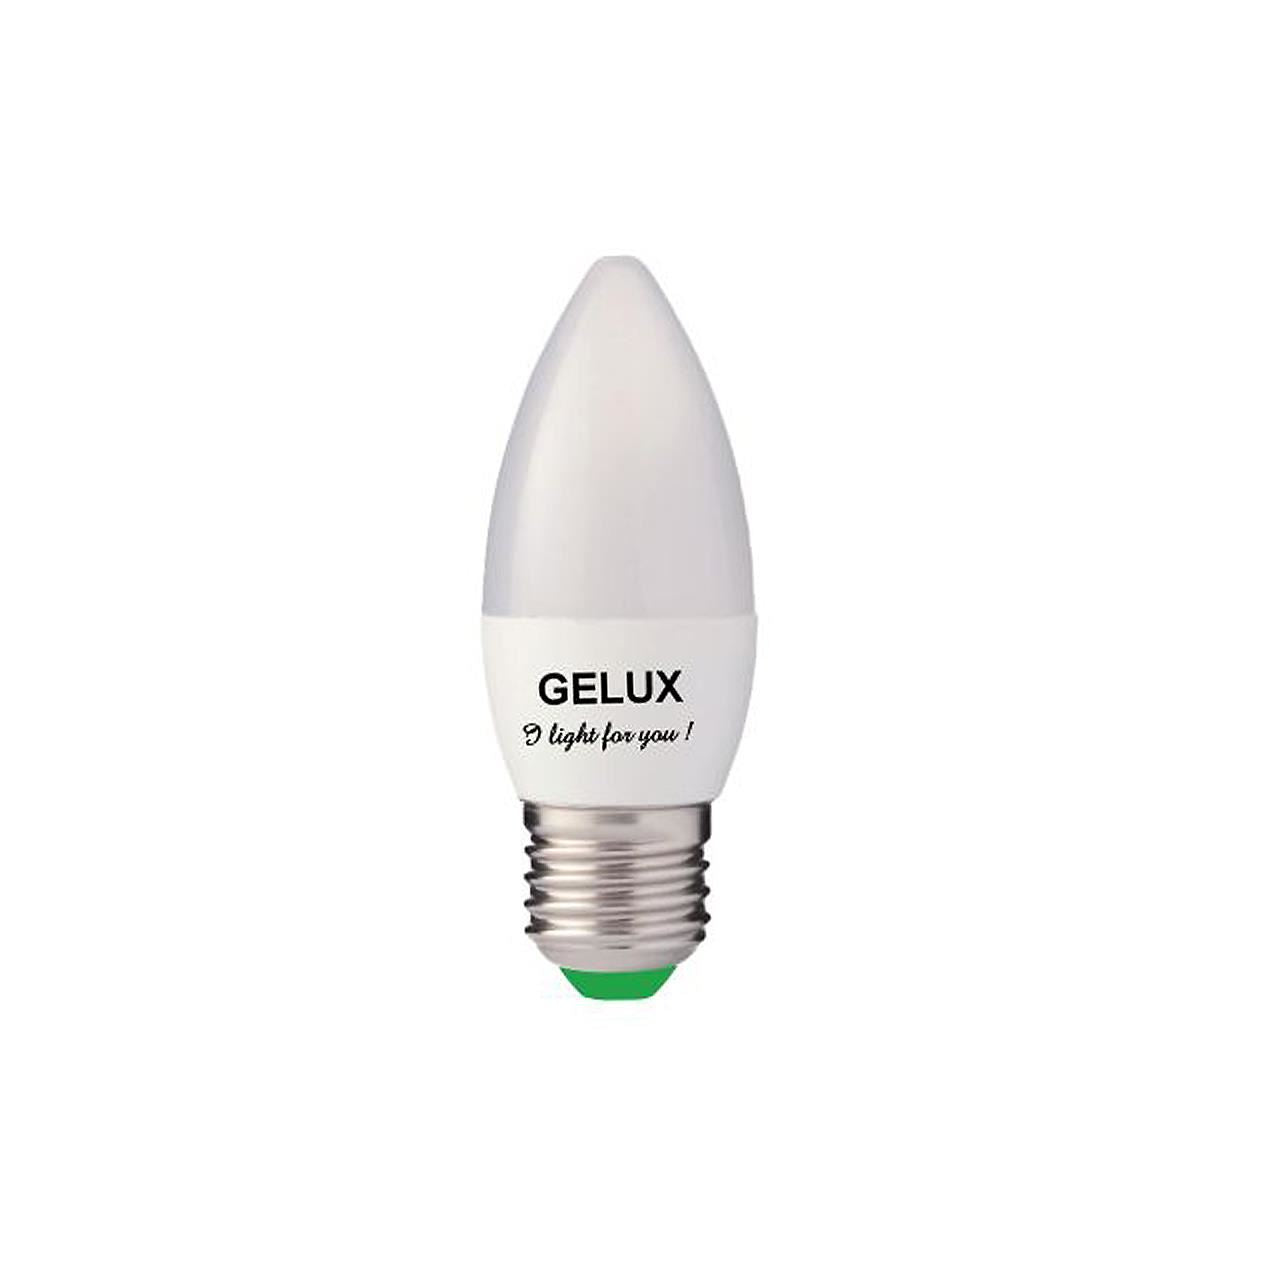 Bec LED Lumanare 5W E27 ECOLED, echivalent 40W lumina calda, Gelux